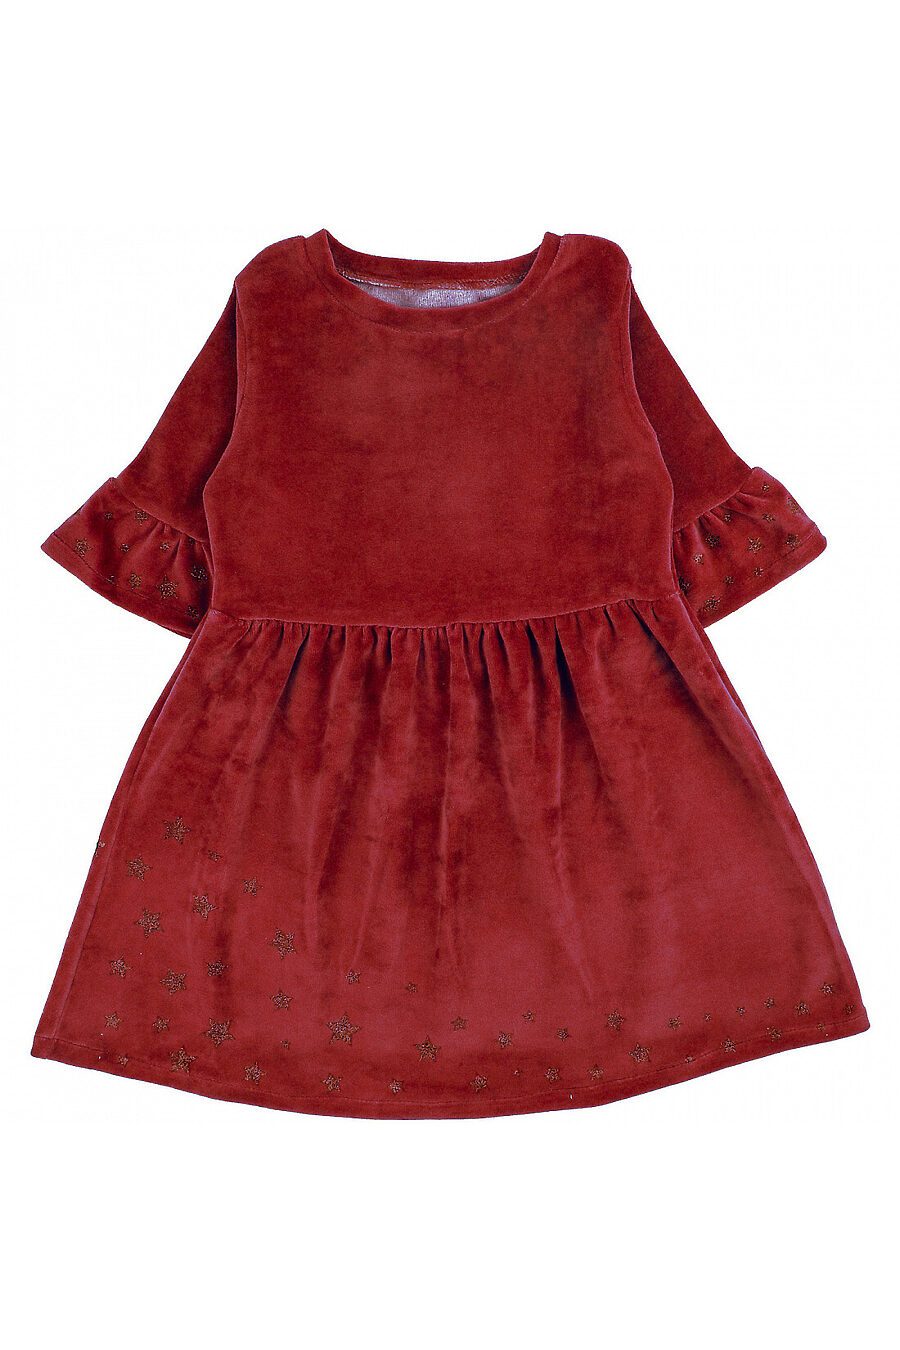 Платье YOULALA (742443), купить в Moyo.moda